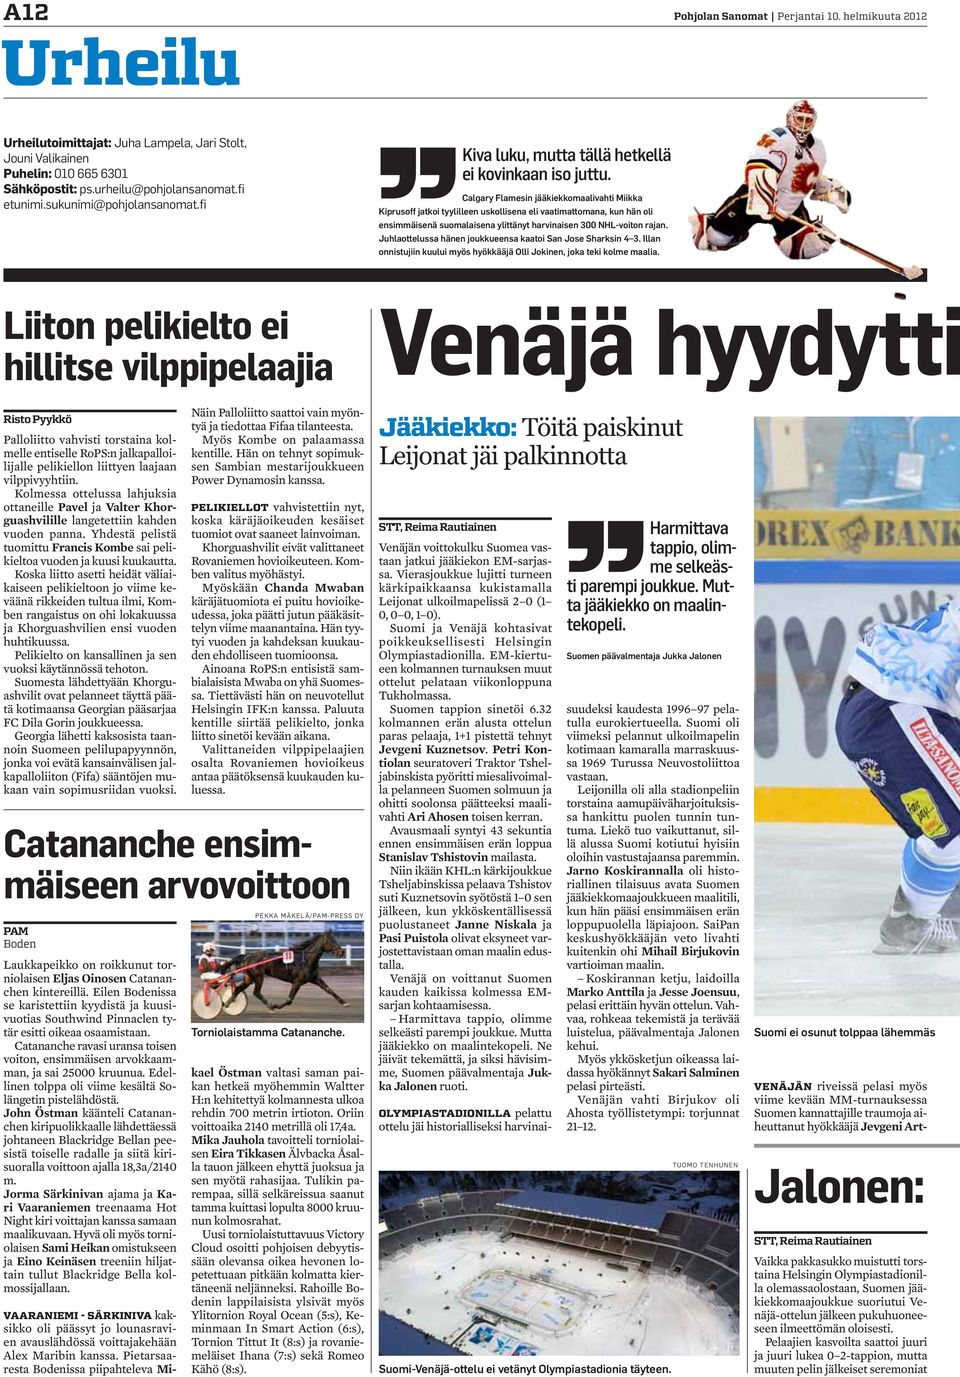 Calgary Flamesin jääkiekkomaalivahti Miikka Kiprusoff jatkoi tyylilleen uskollisena eli vaatimattomana, kun hän oli ensimmäisenä suomalaisena ylittänyt harvinaisen 300 NHL-voiton rajan.